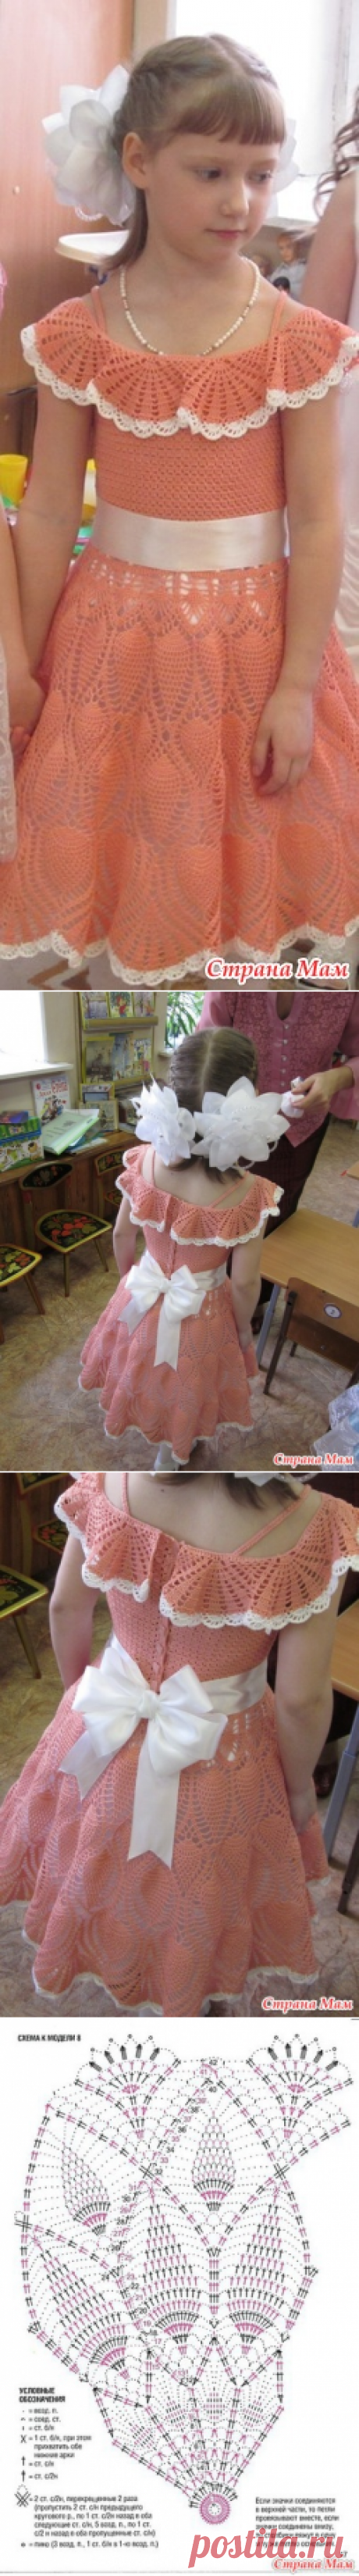 Платье внучке на выпускной в садике - Вязание - Страна Мам